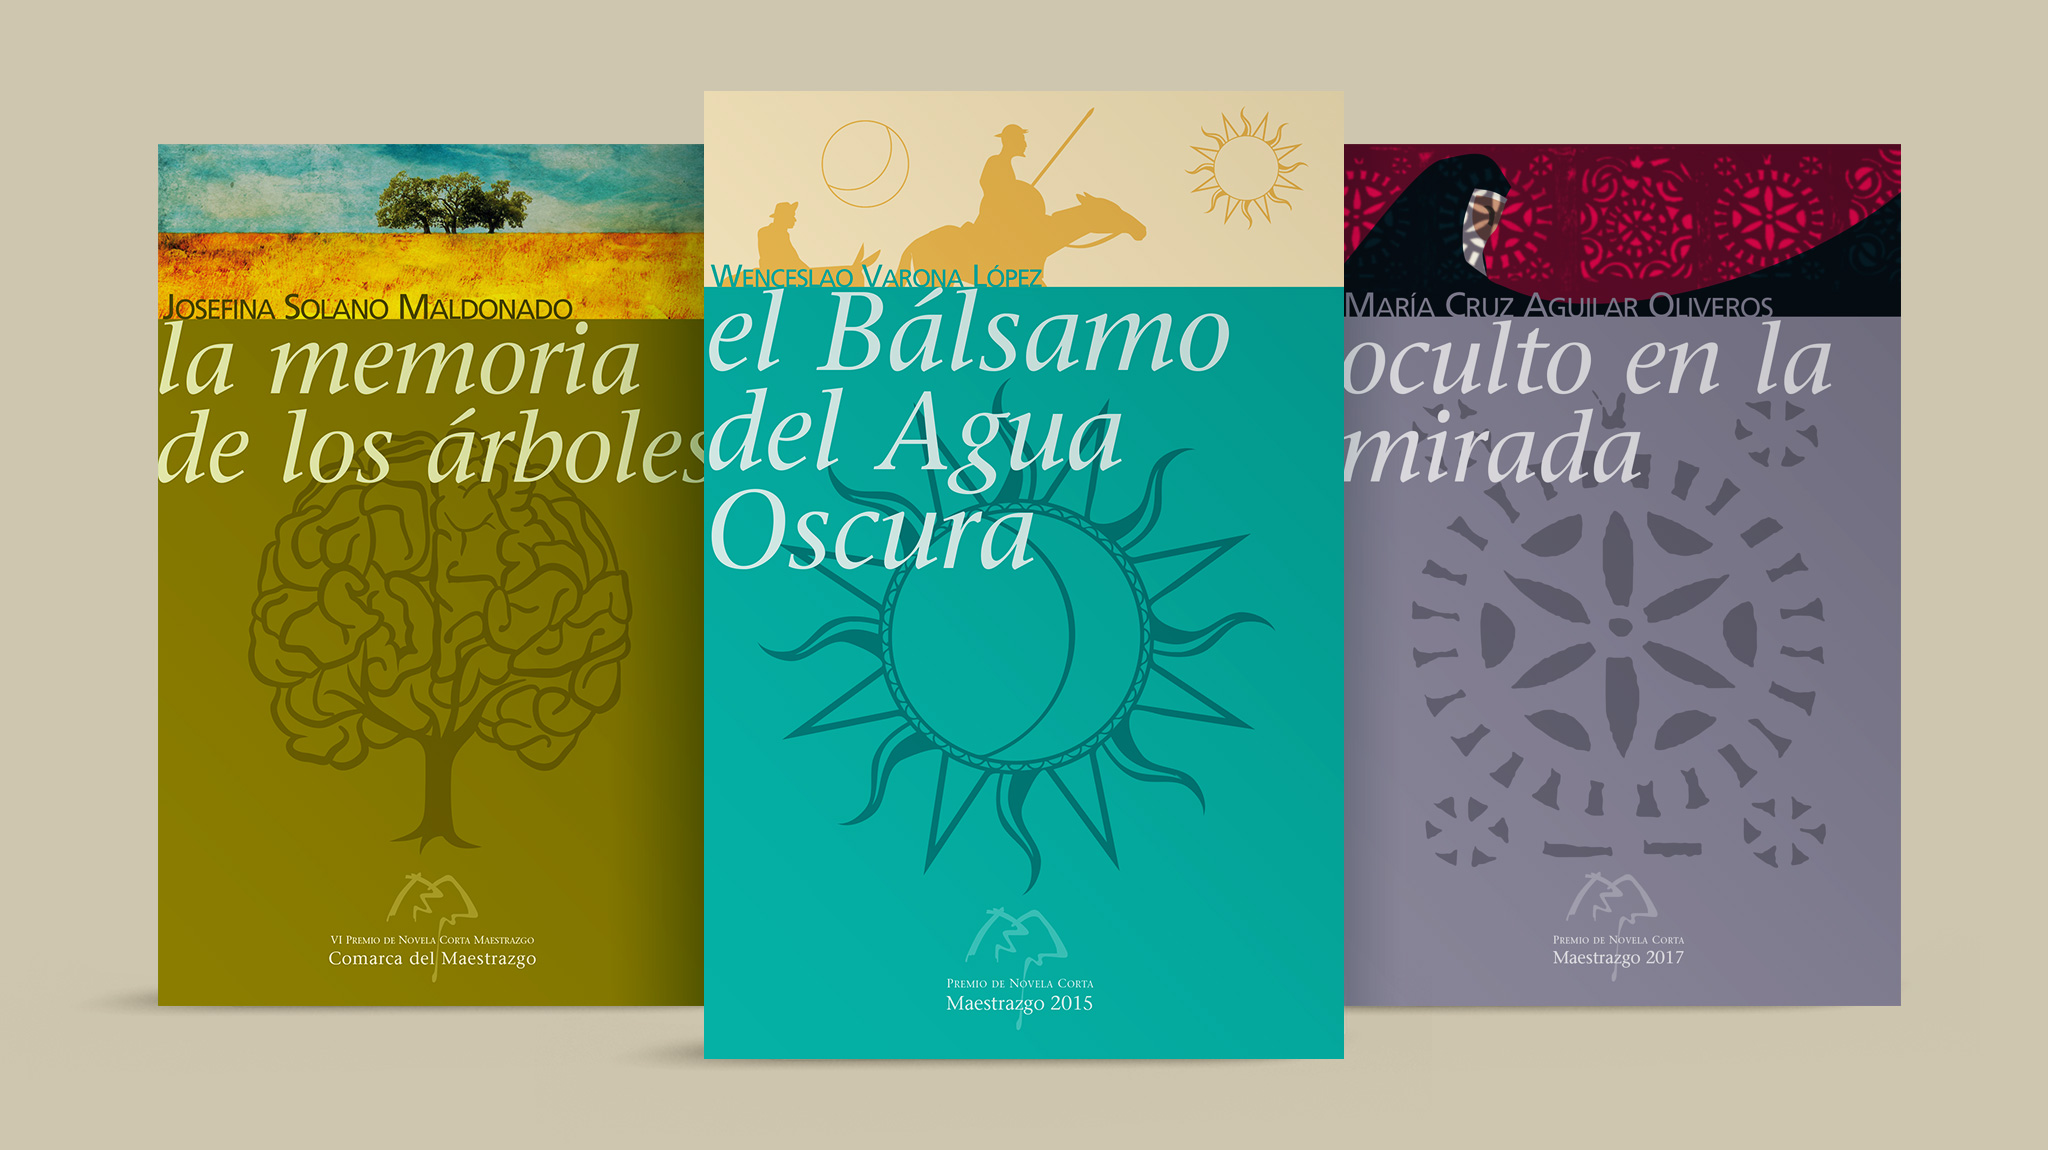 Colección de novelas del MAestrazgo para el Premio Novela Corta Maestrazgo 2015